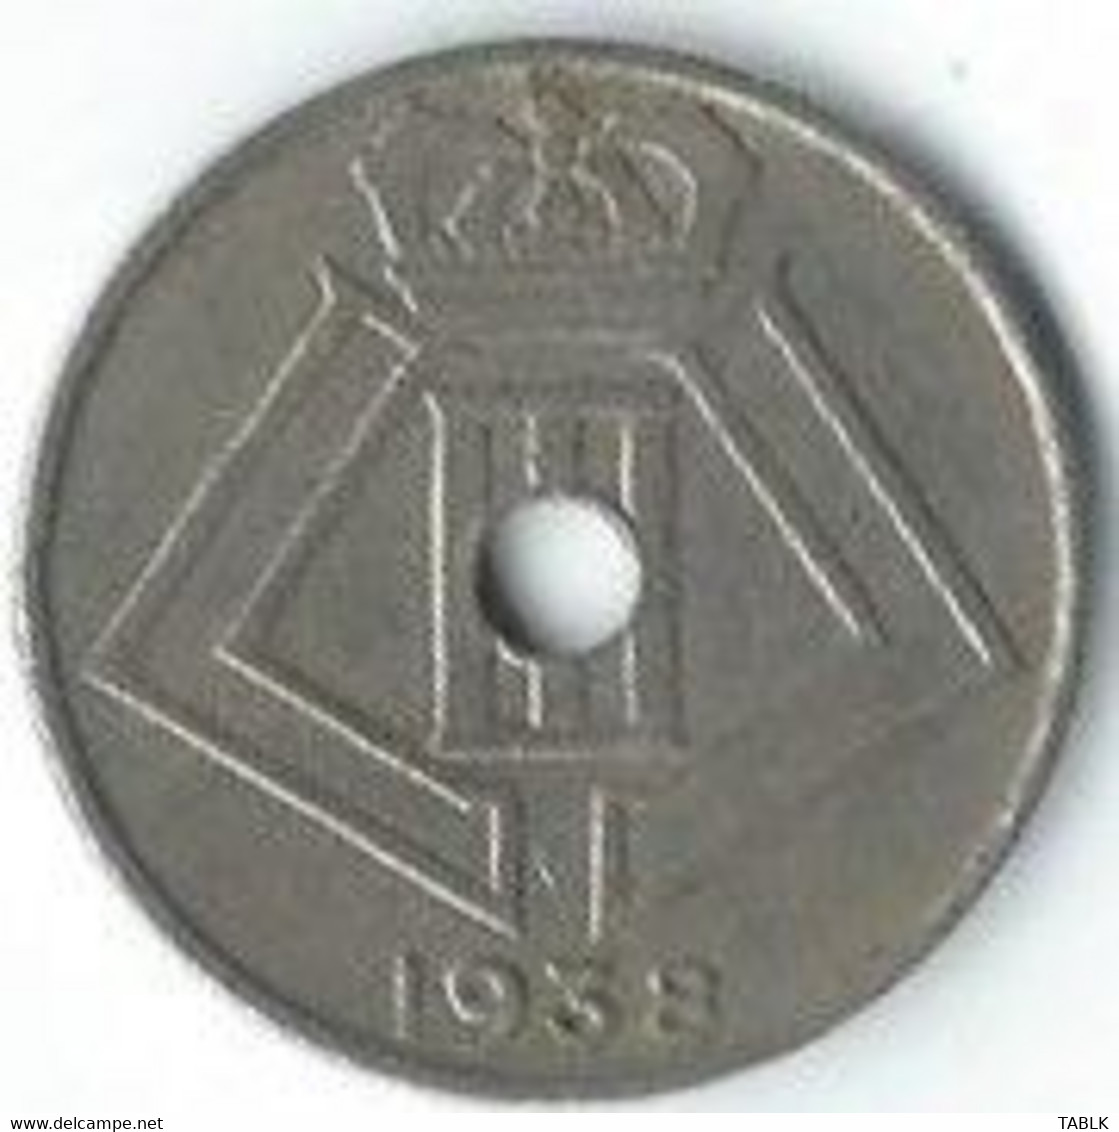 M975 - BELGIË - BELGIUM - 10 CENTIEM 1938 - 10 Cents